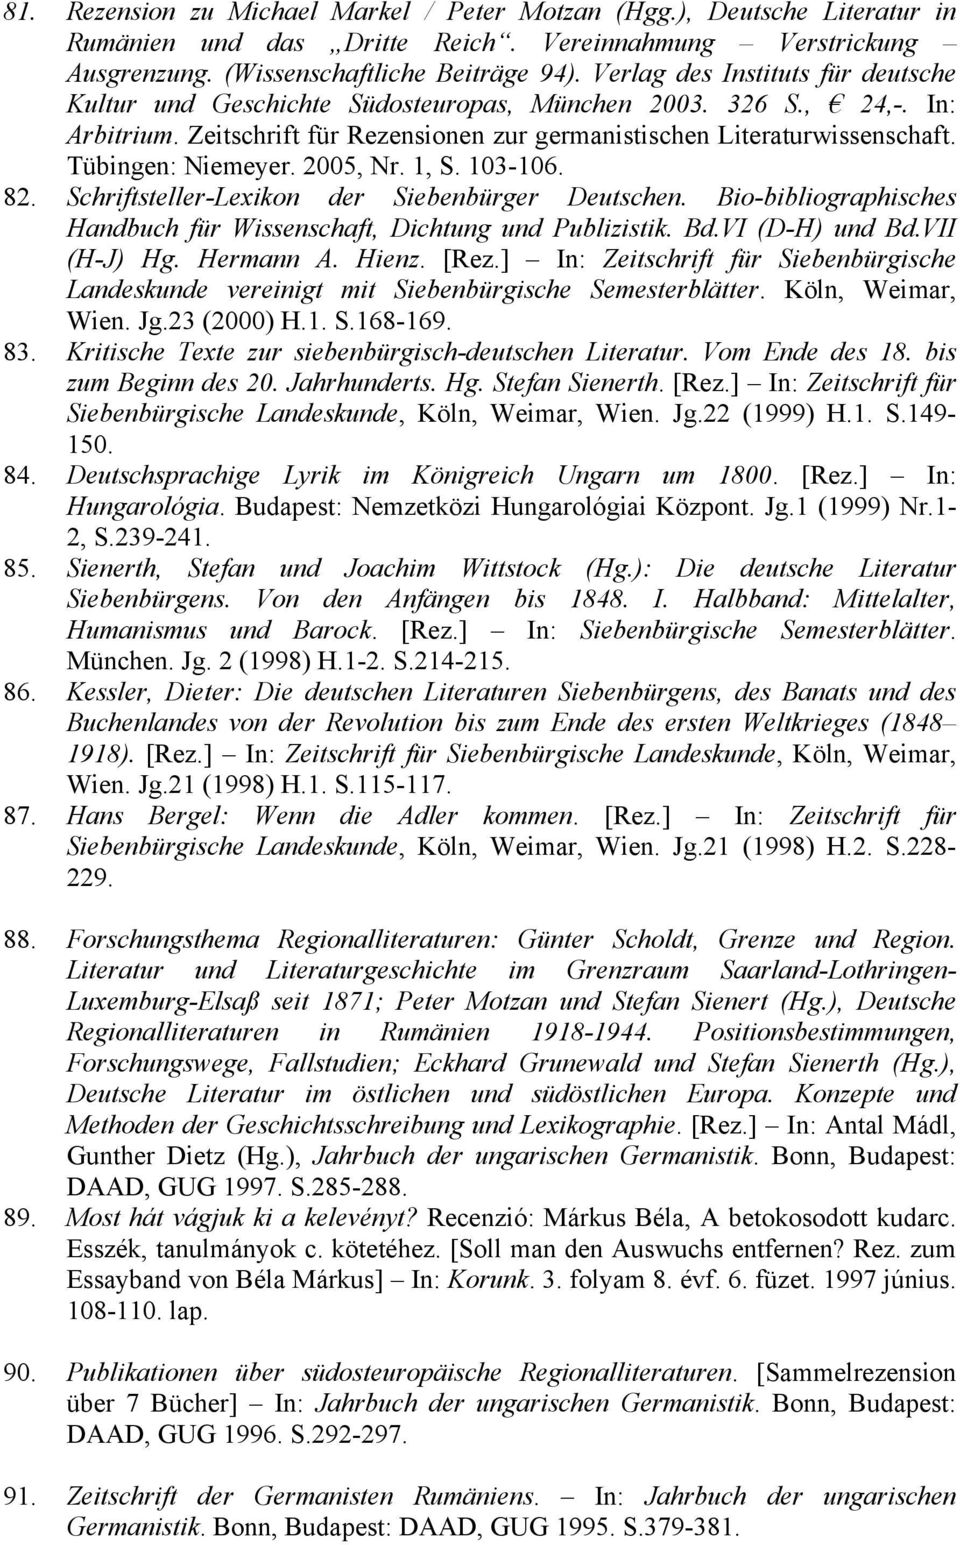 Tübingen: Niemeyer. 2005, Nr. 1, S. 103-106. 82. Schriftsteller-Lexikon der Siebenbürger Deutschen. Bio-bibliographisches Handbuch für Wissenschaft, Dichtung und Publizistik. Bd.VI (D-H) und Bd.